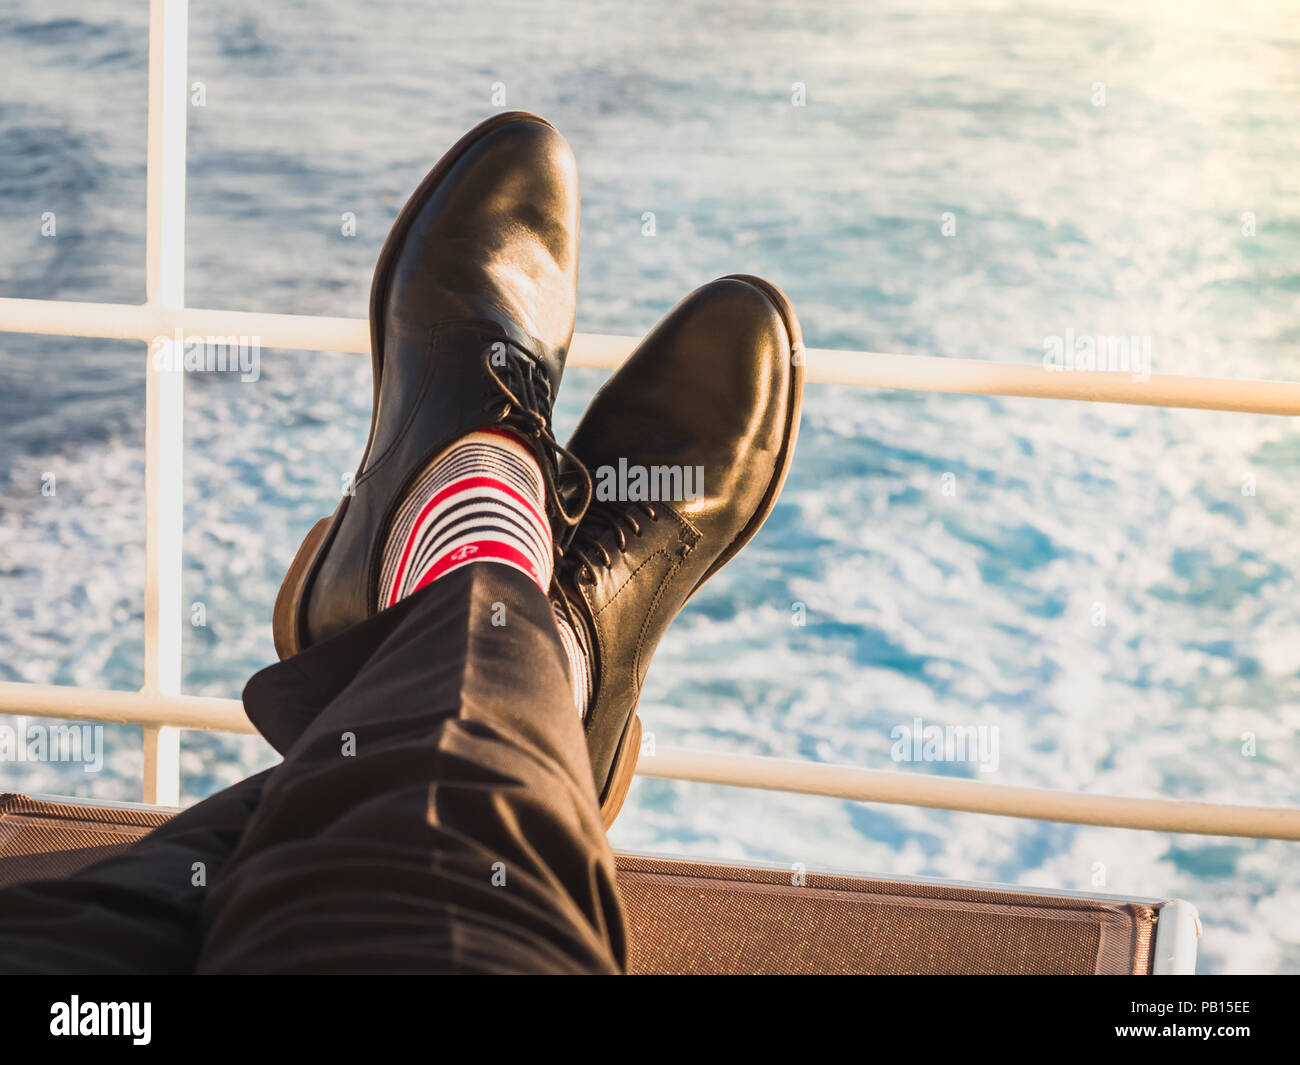 Mann in elegante, schwarze Schuhe, dunkle Hose und lustig, hell, Socken mit  Muster auf dem Deck eines Kreuzfahrtschiffes. Lifestyle, Mode, Spaß  Stockfotografie - Alamy